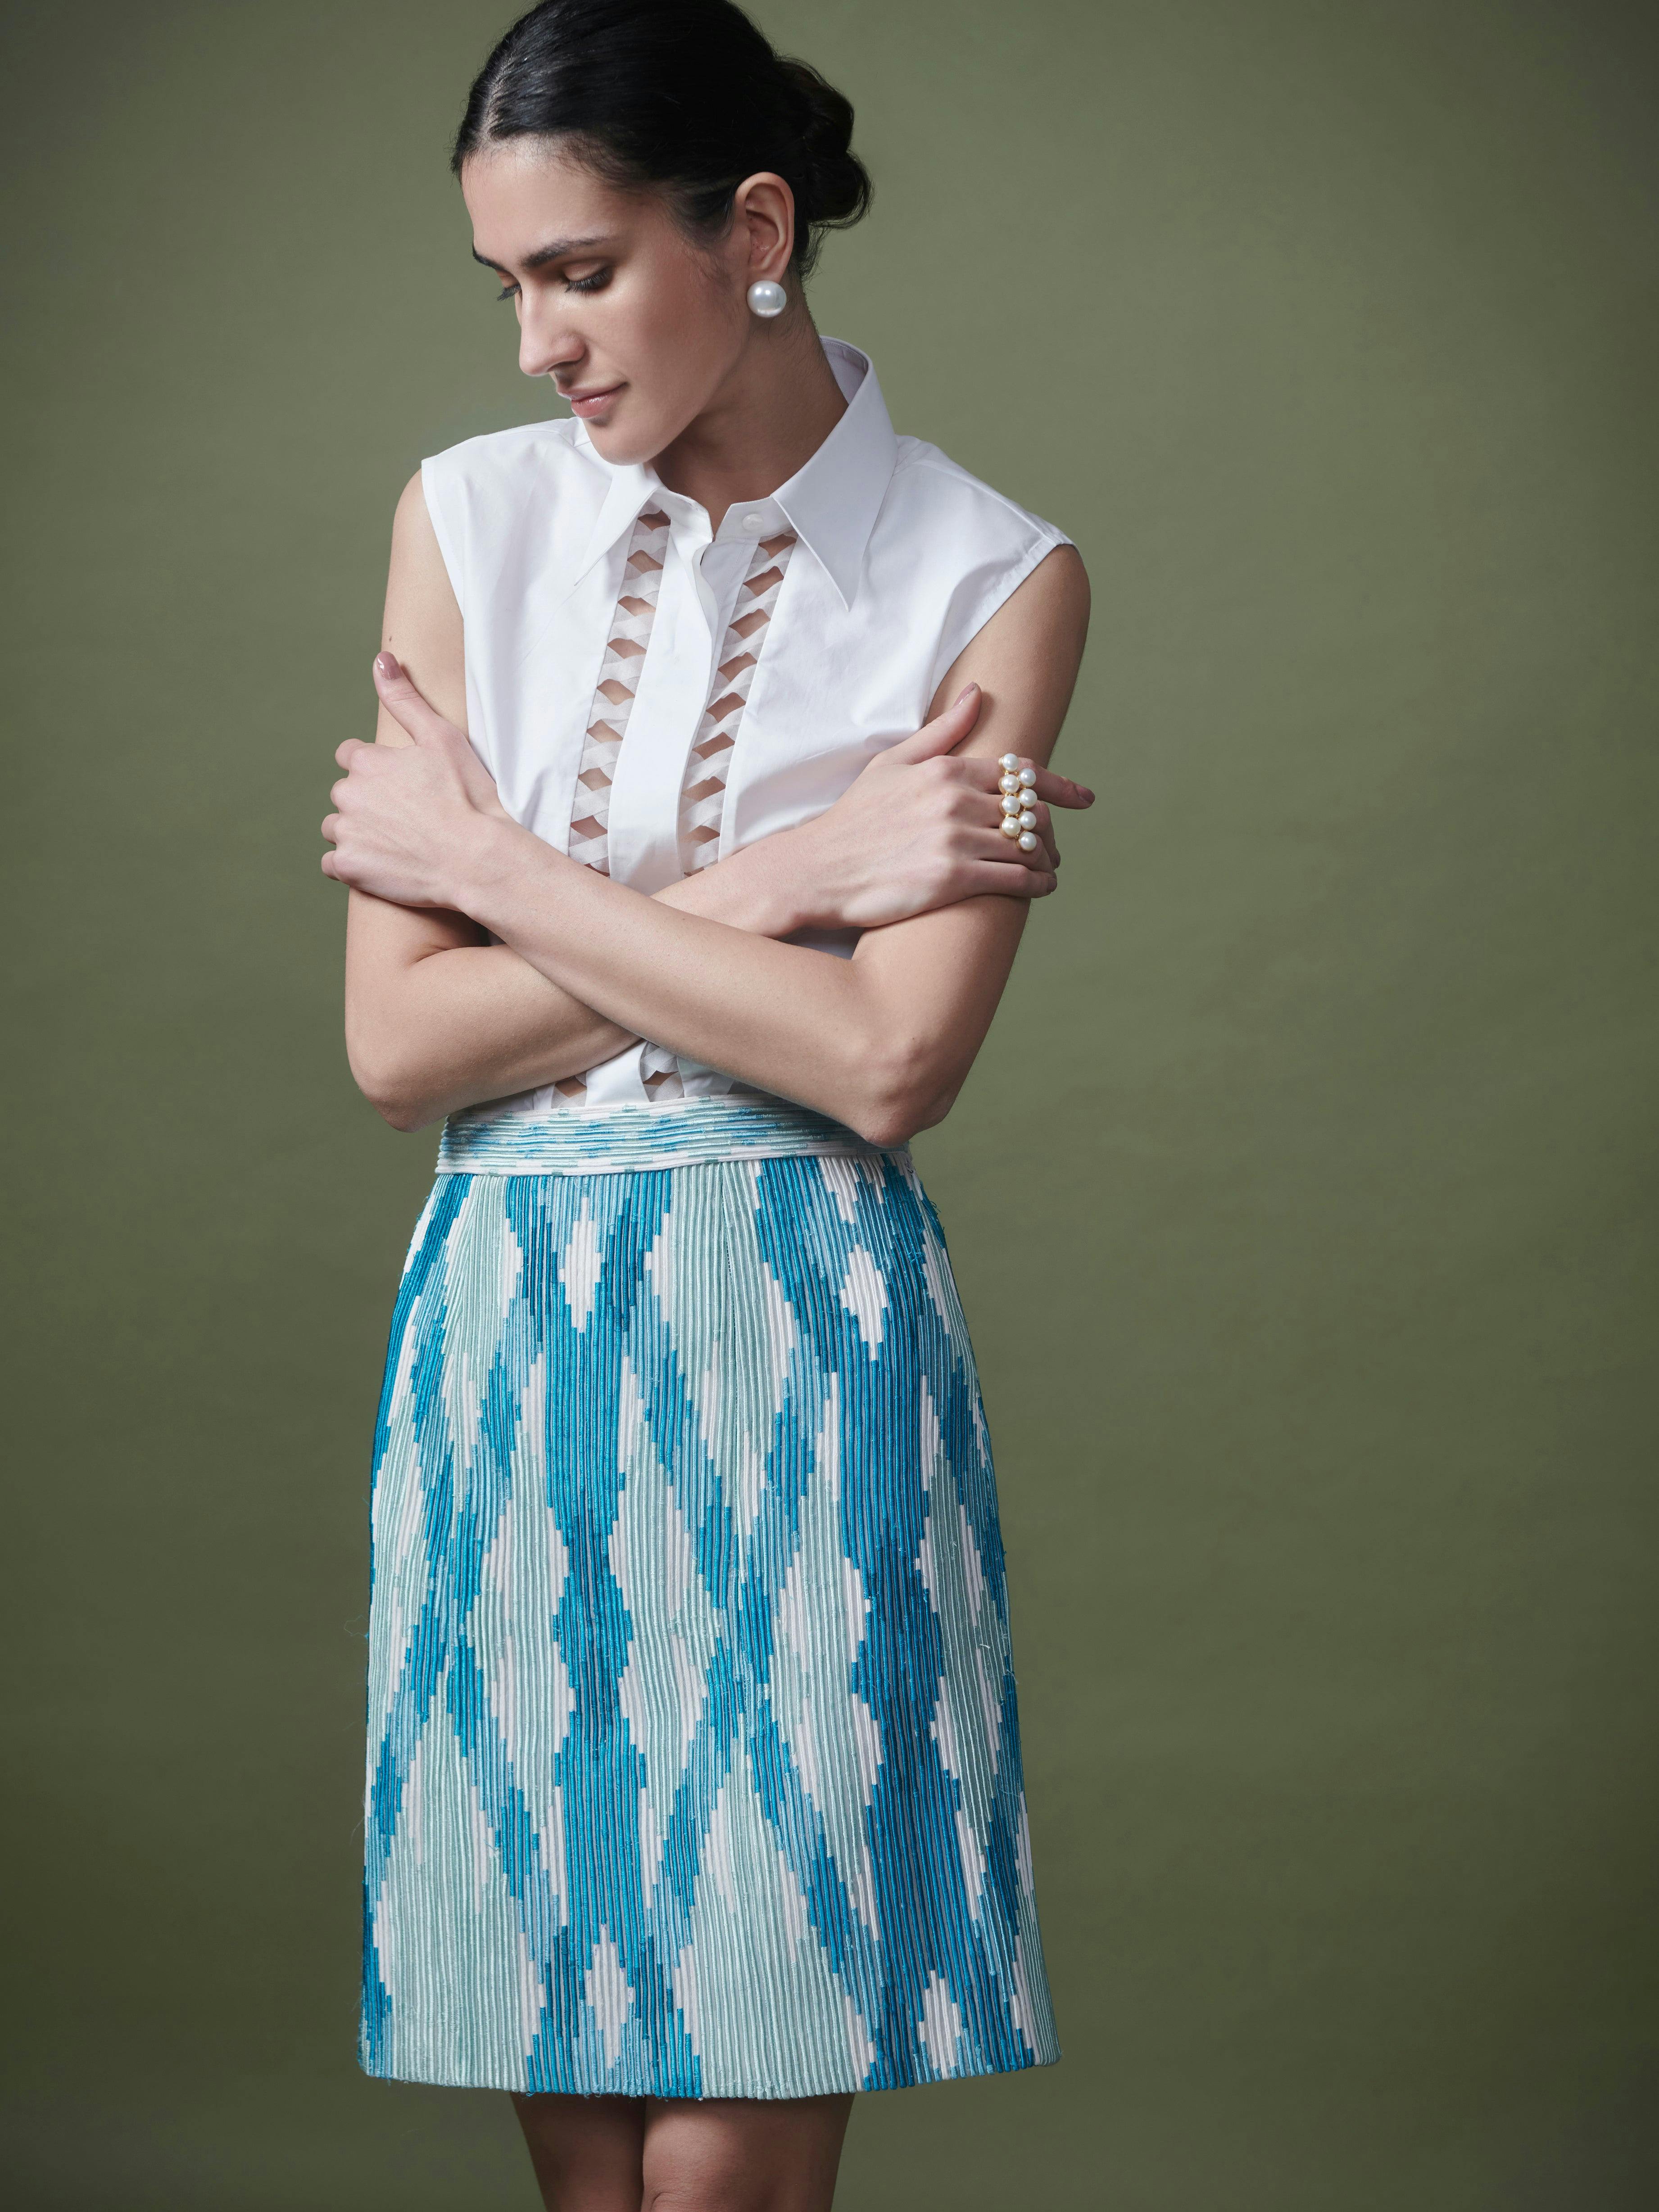 Corded skirt, a product by Shriya Khanna